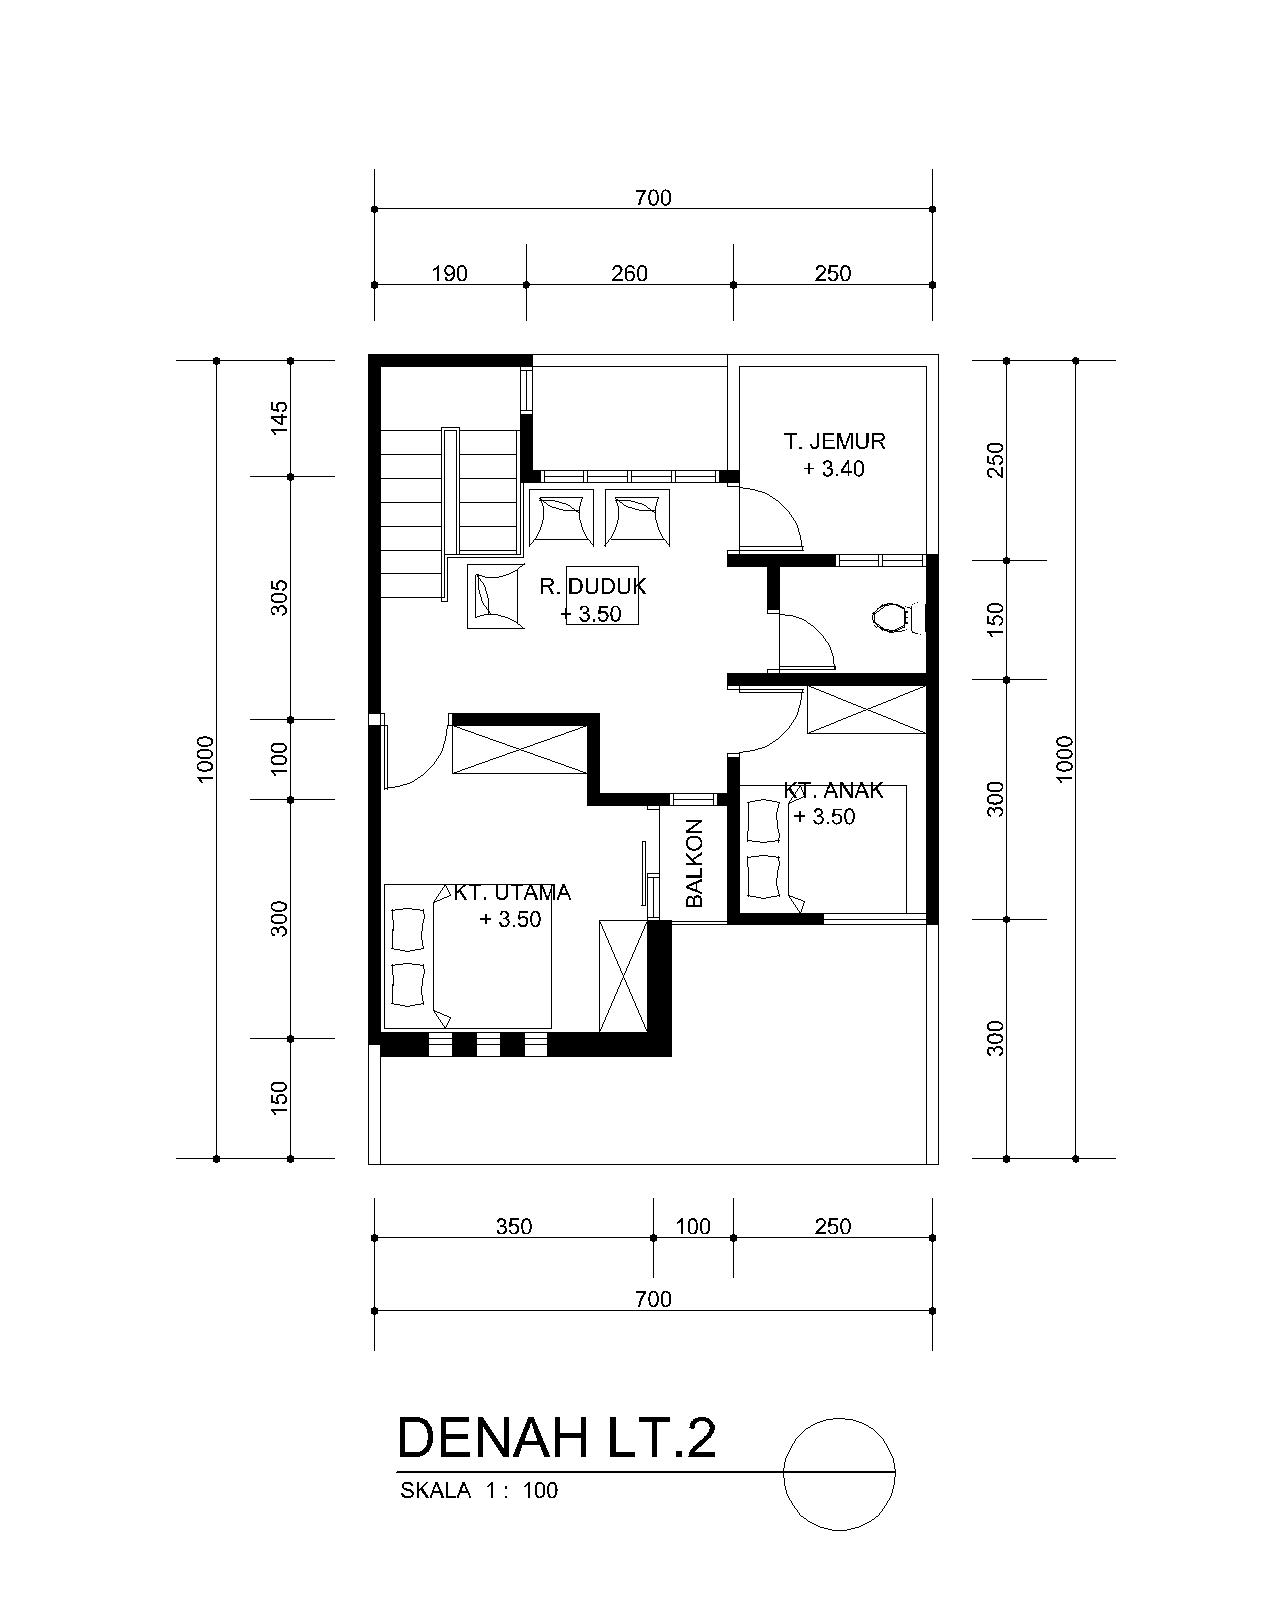 Planning of buildings: DESAIN RUMAH MINIMALIS MUNGIL (7 X 